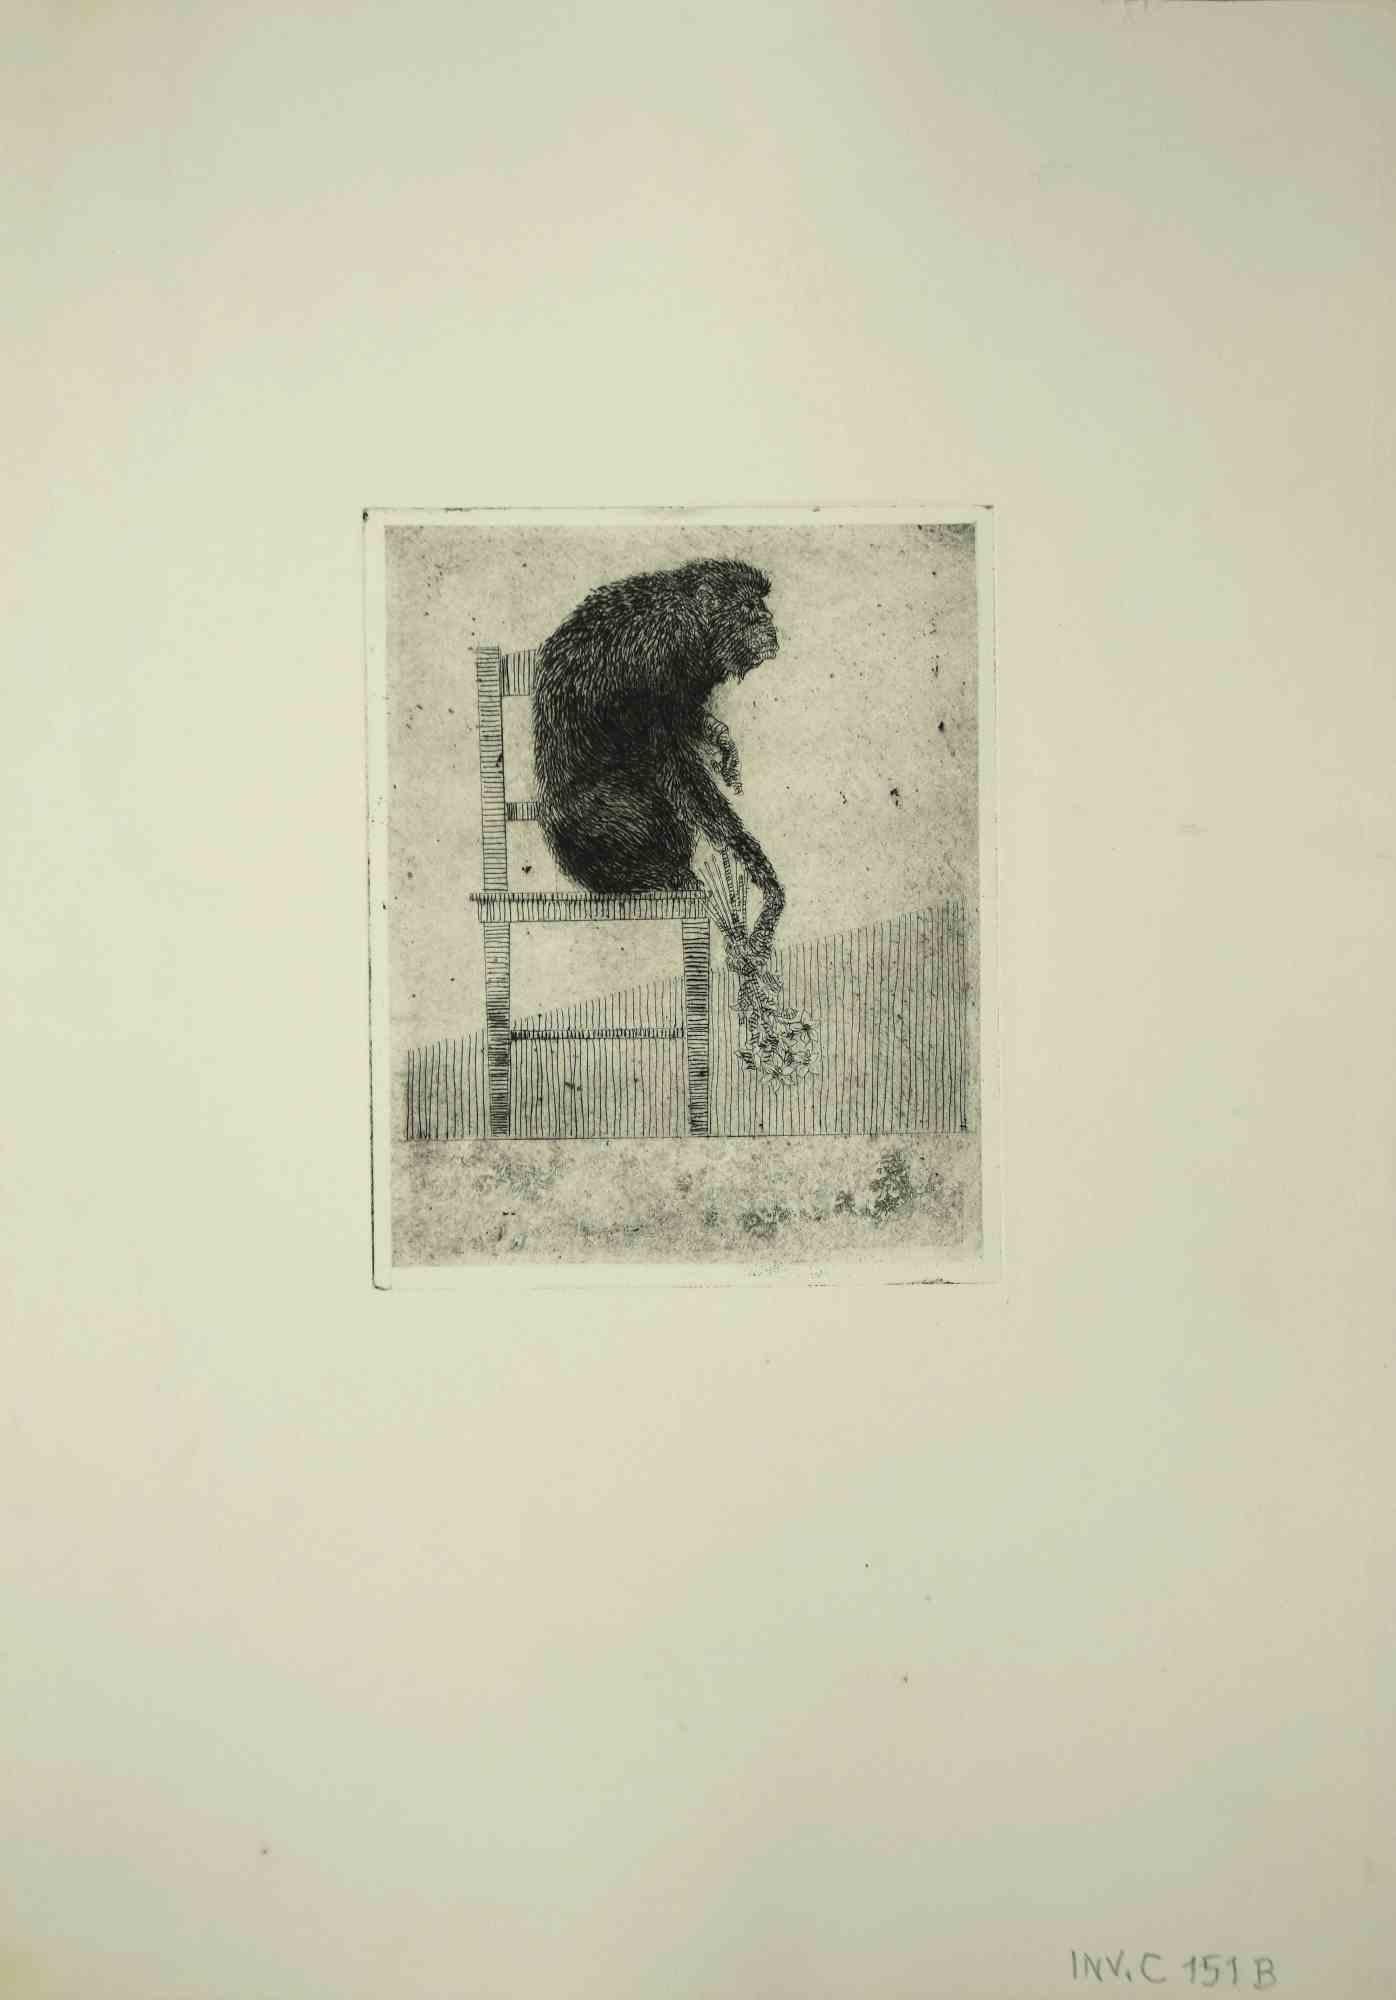 Seated Monkey - Print by Leo Guida - 1975